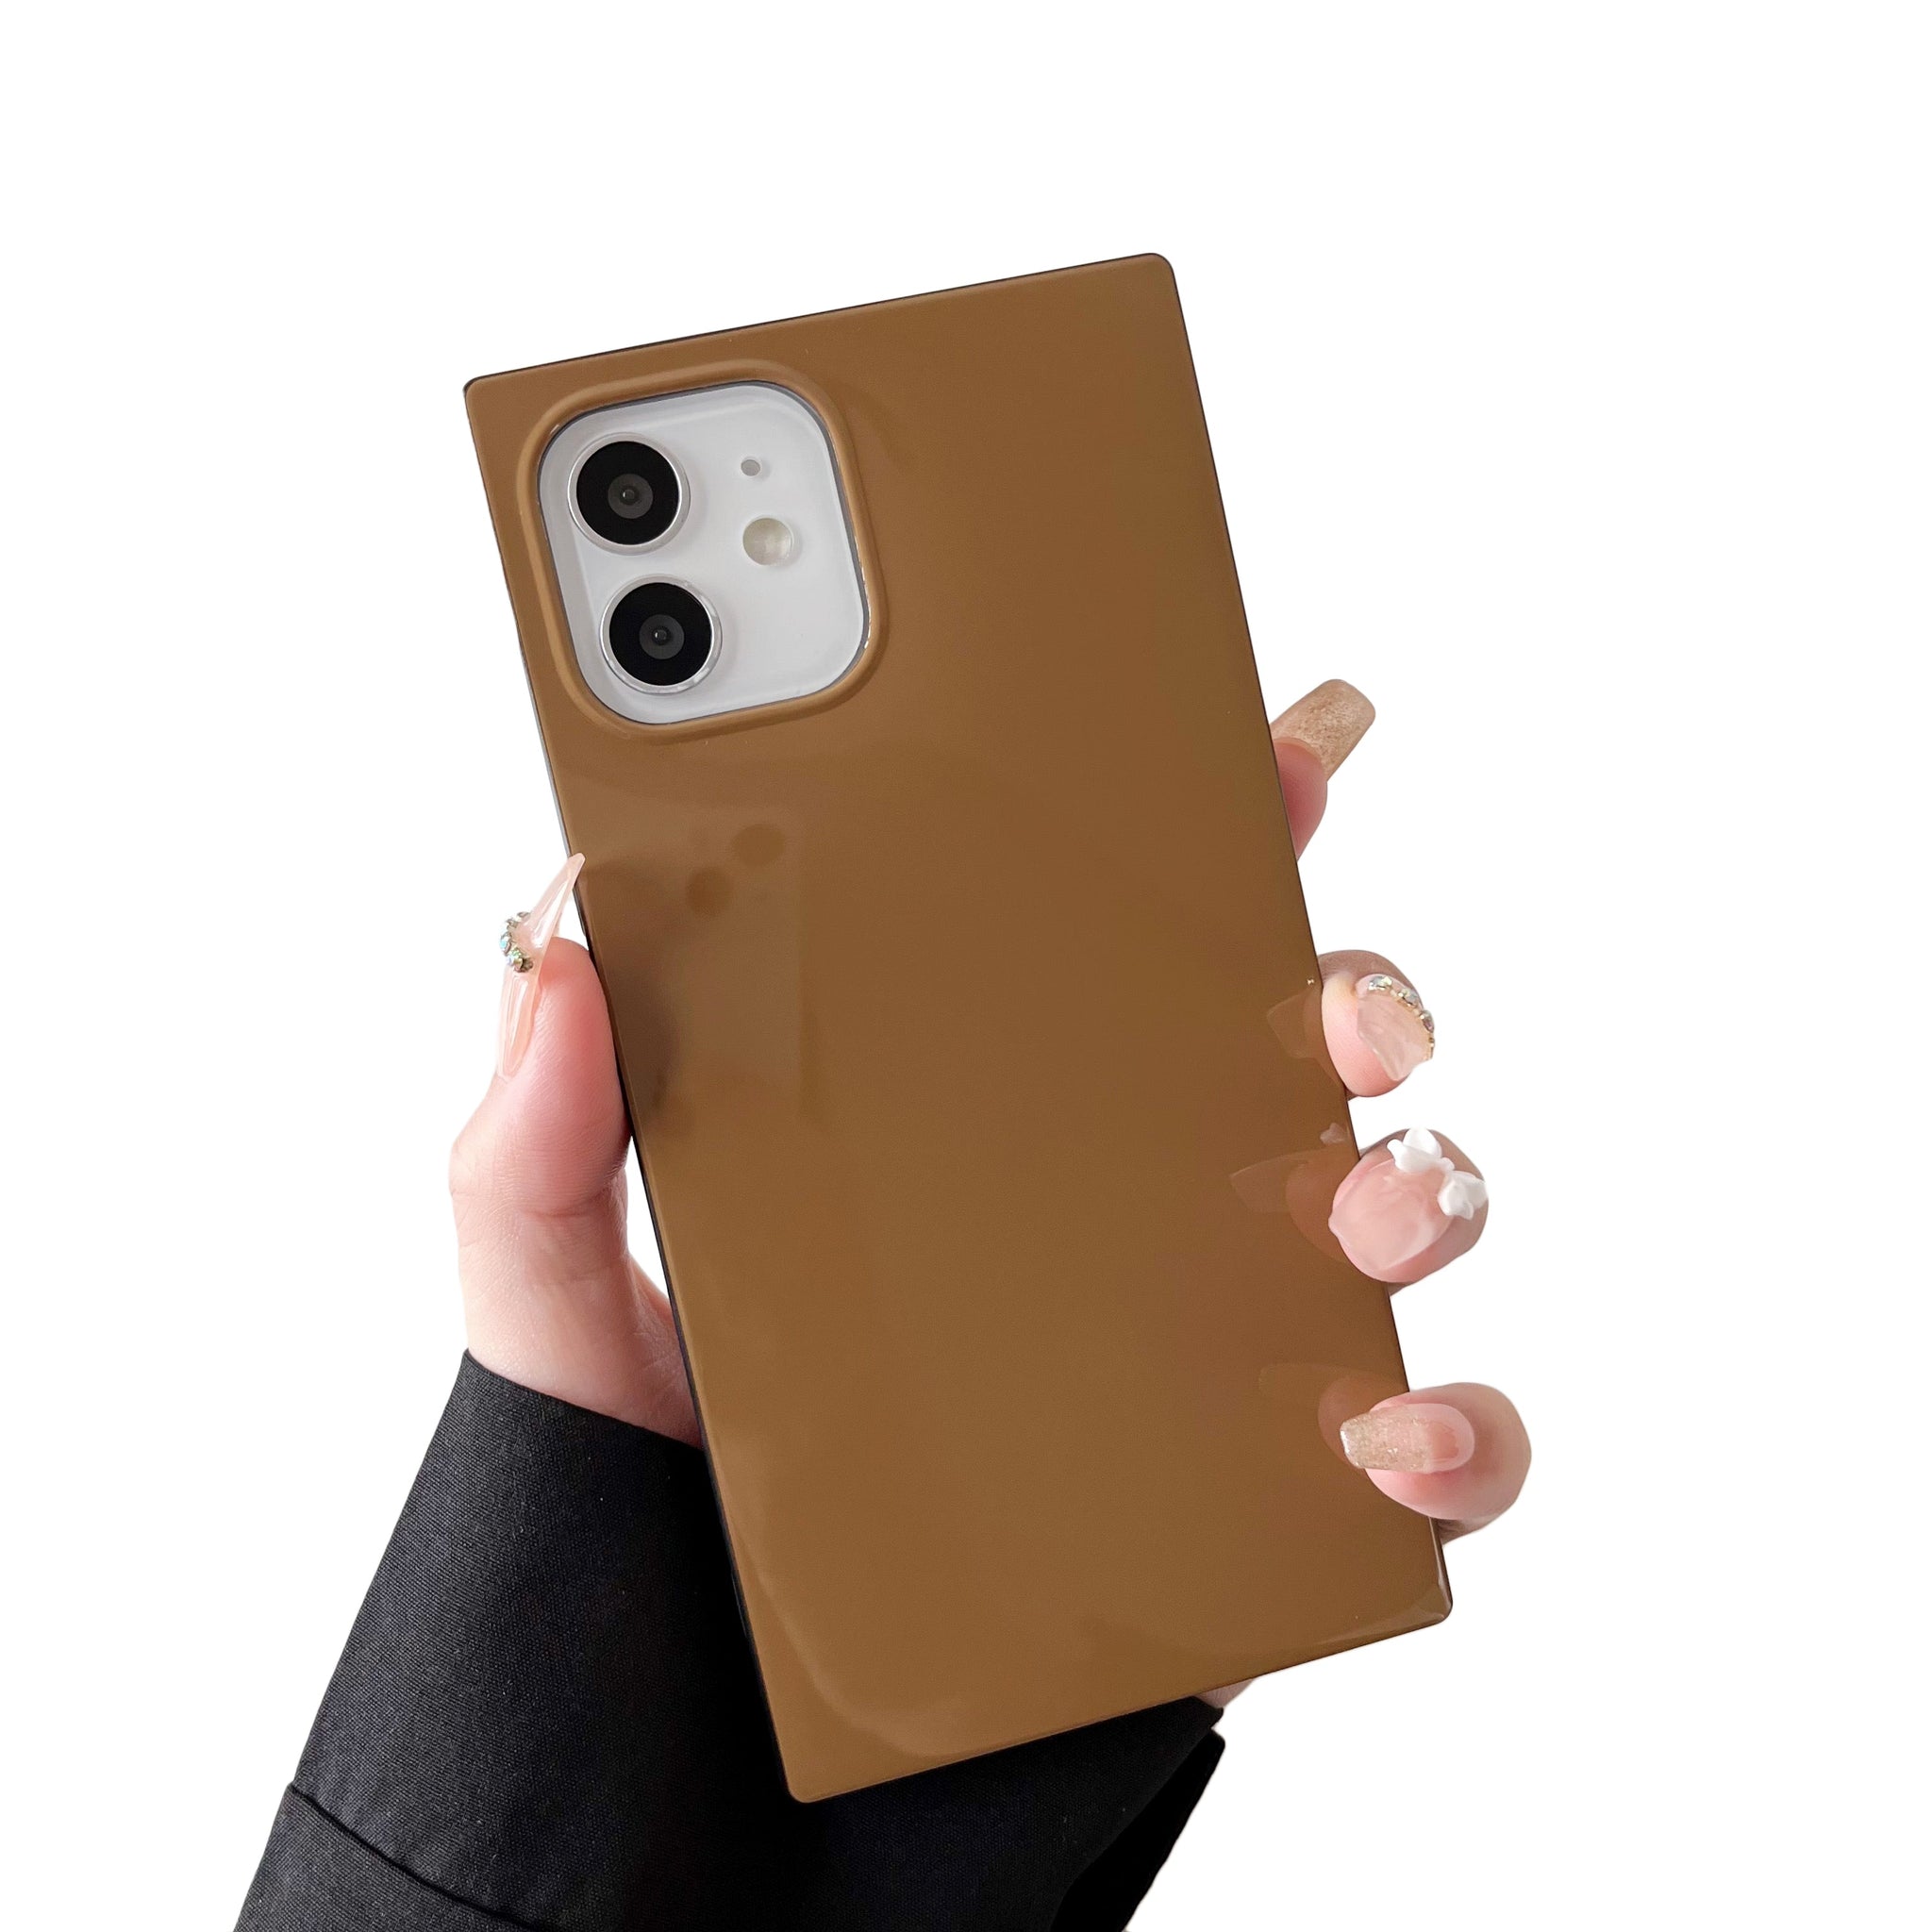 iPhone 12 mini Case Square Neutral Plain Color (Golden Brown)